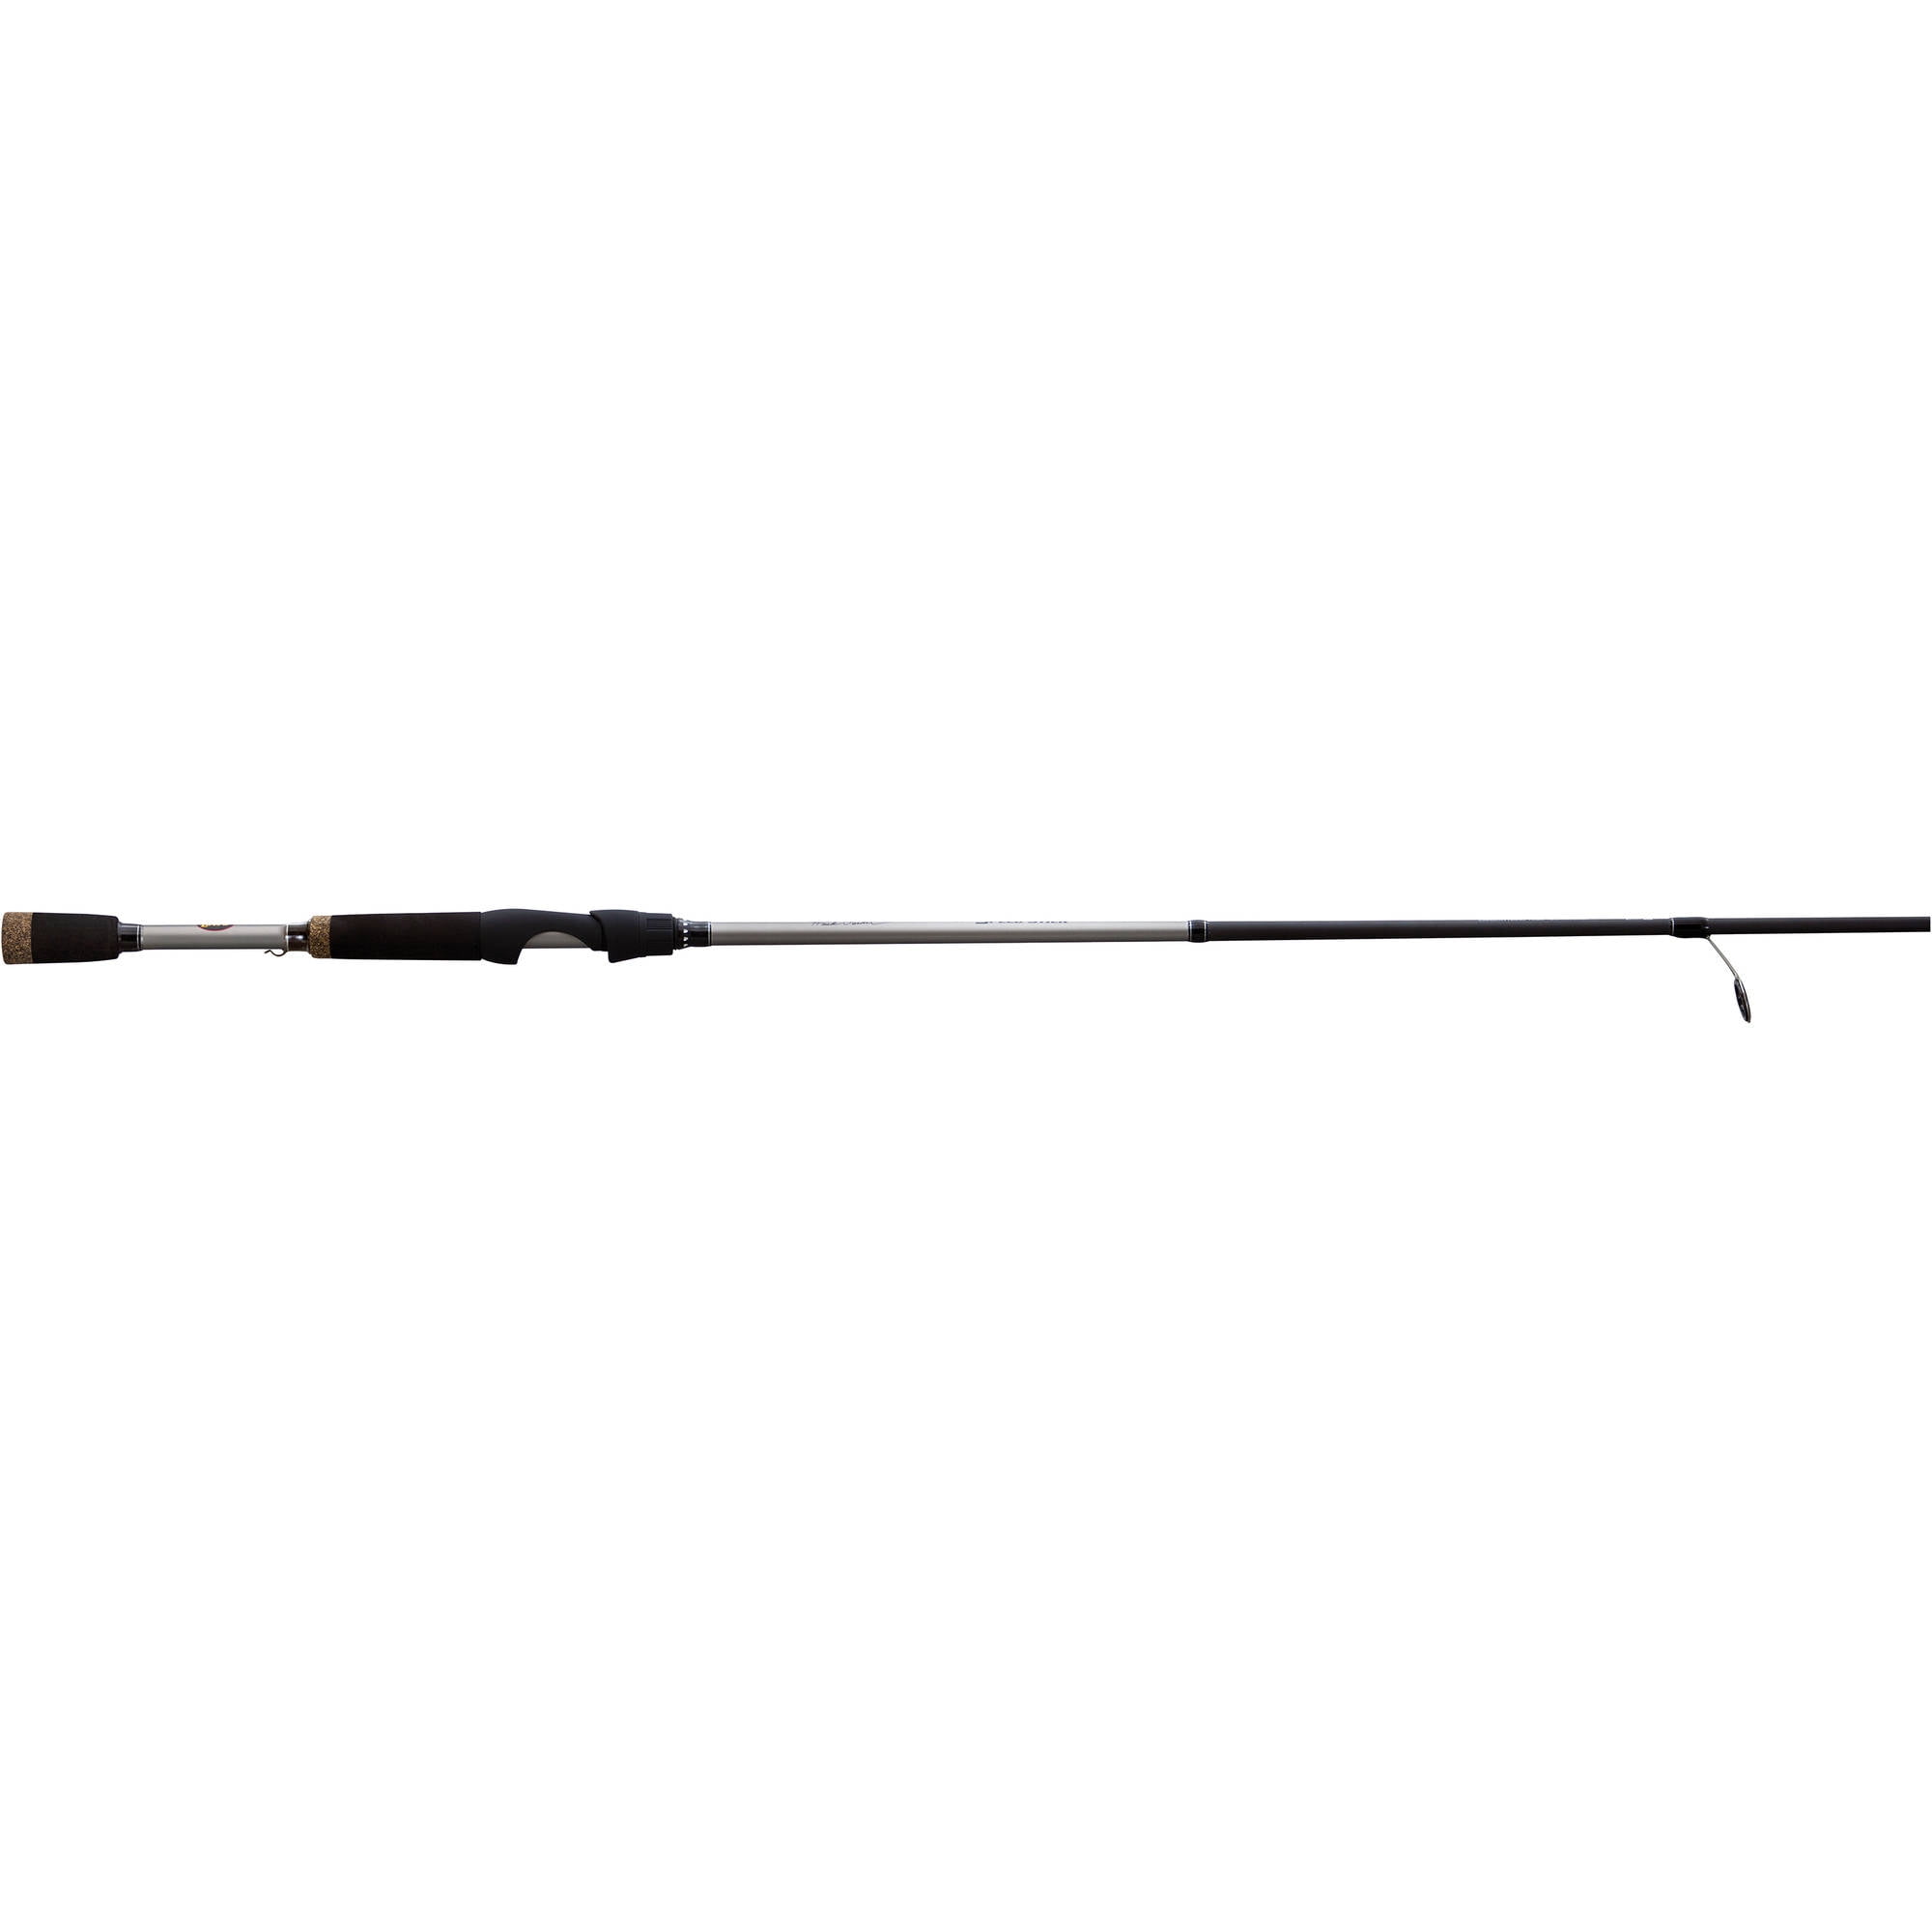 Lew's Hank Parker 6'10Medium Action Spinning Fishing Rod